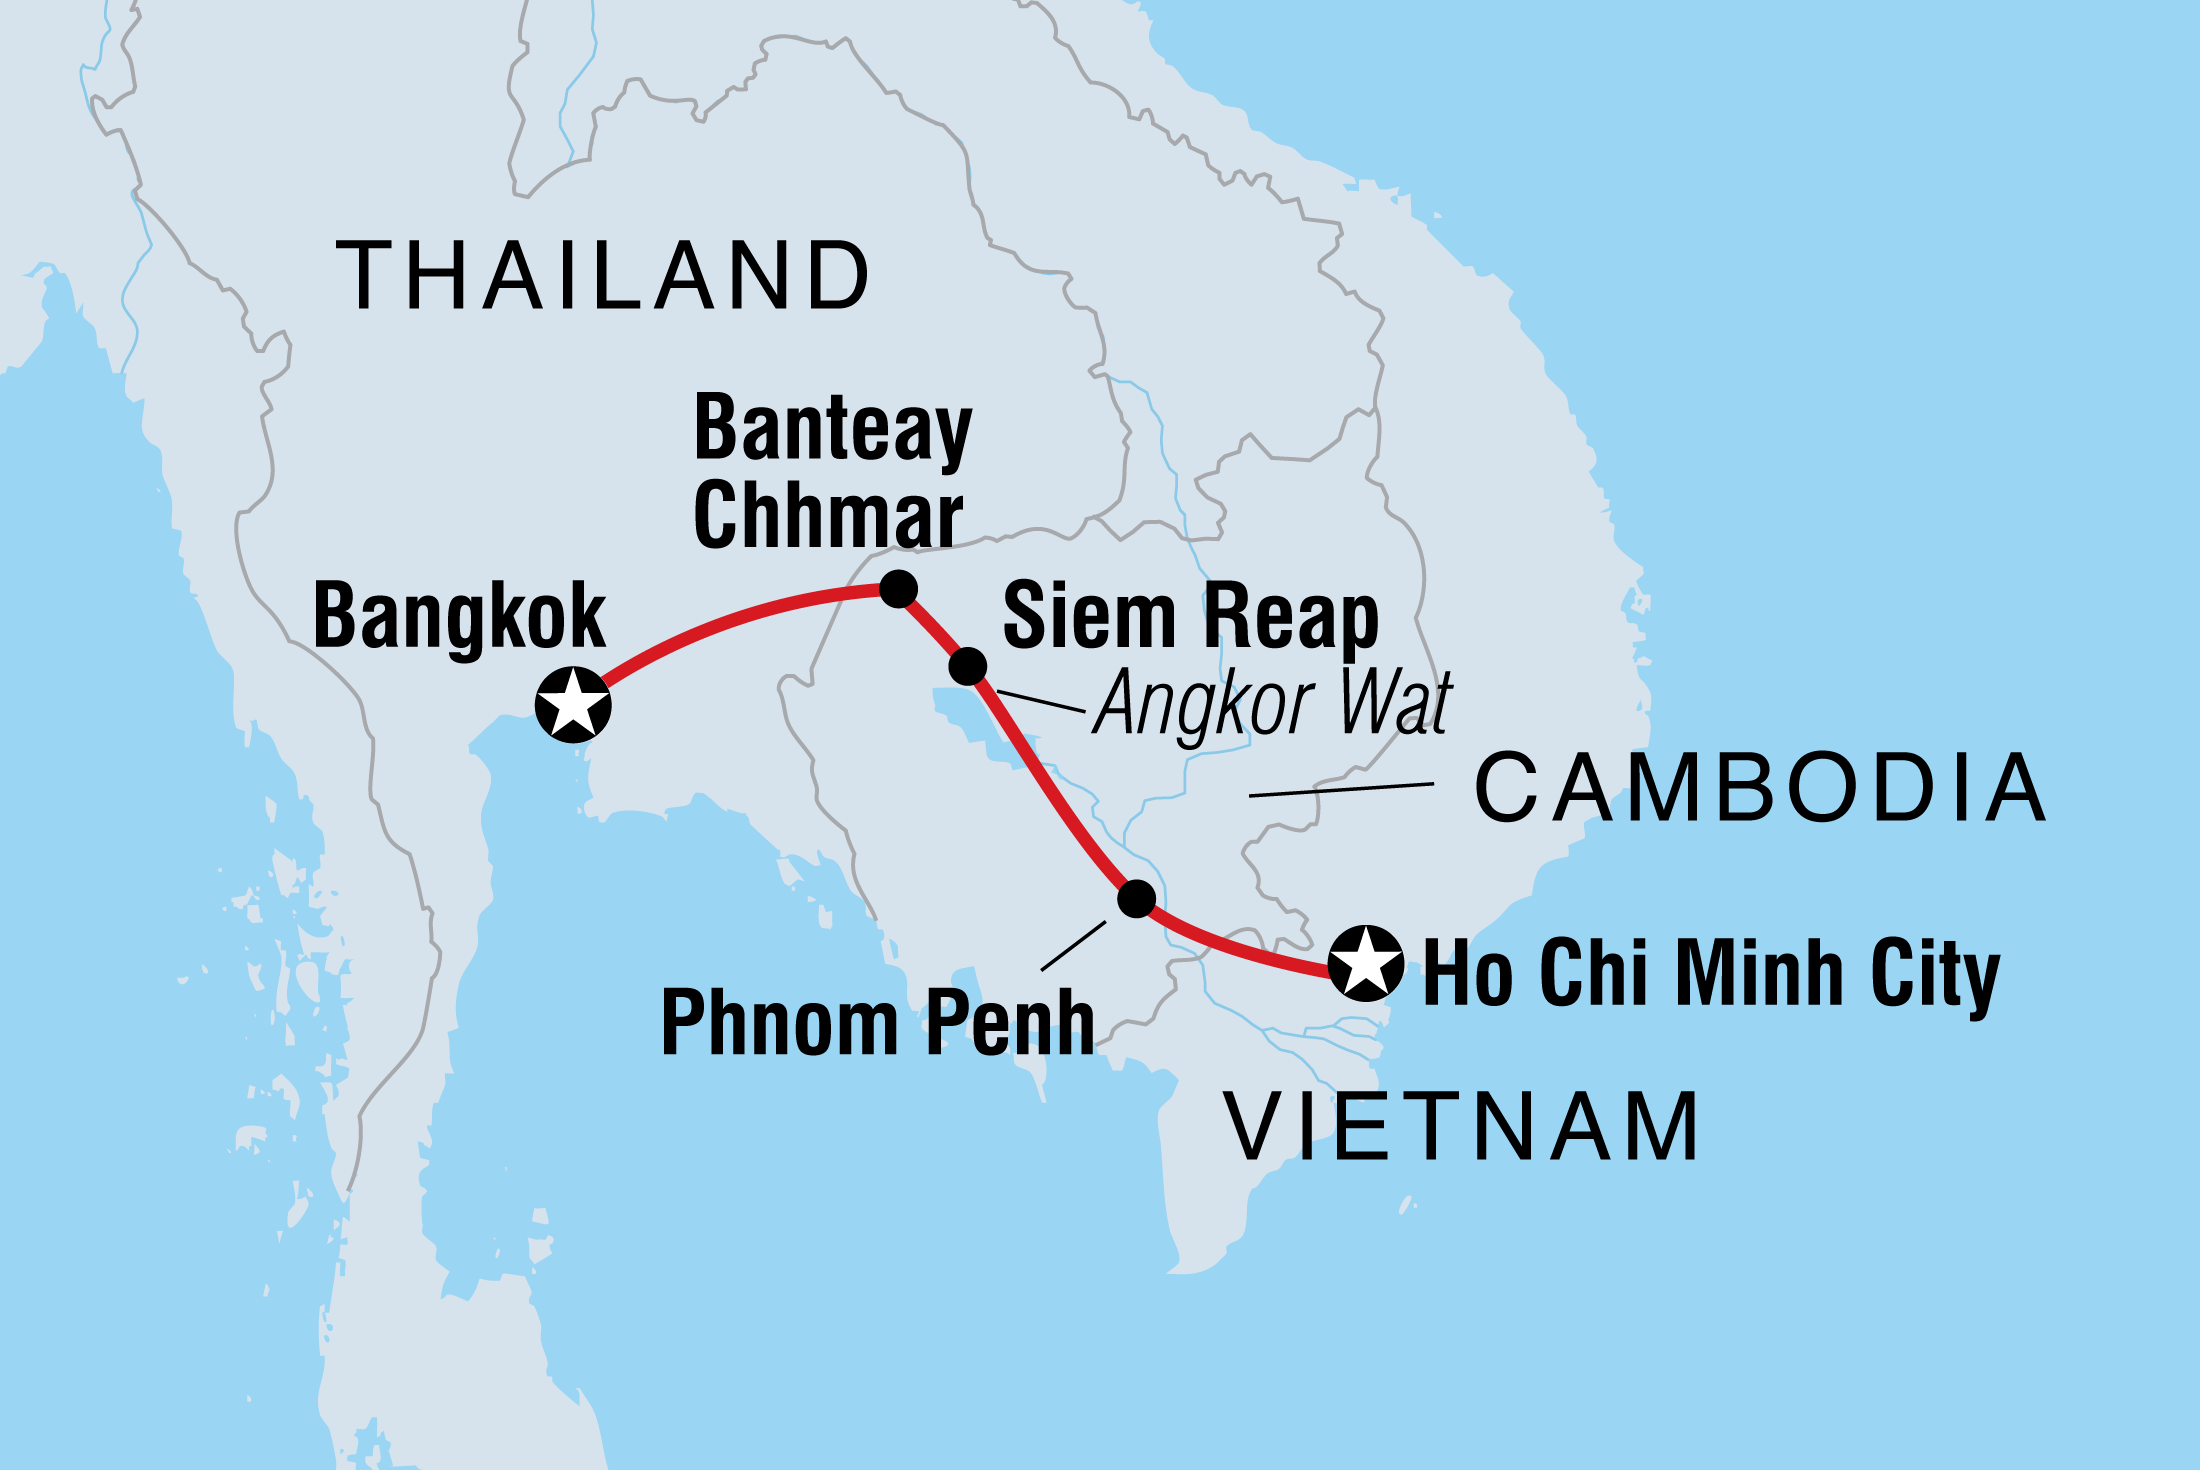 Map of Essential Cambodia including Cambodia, Thailand and Vietnam